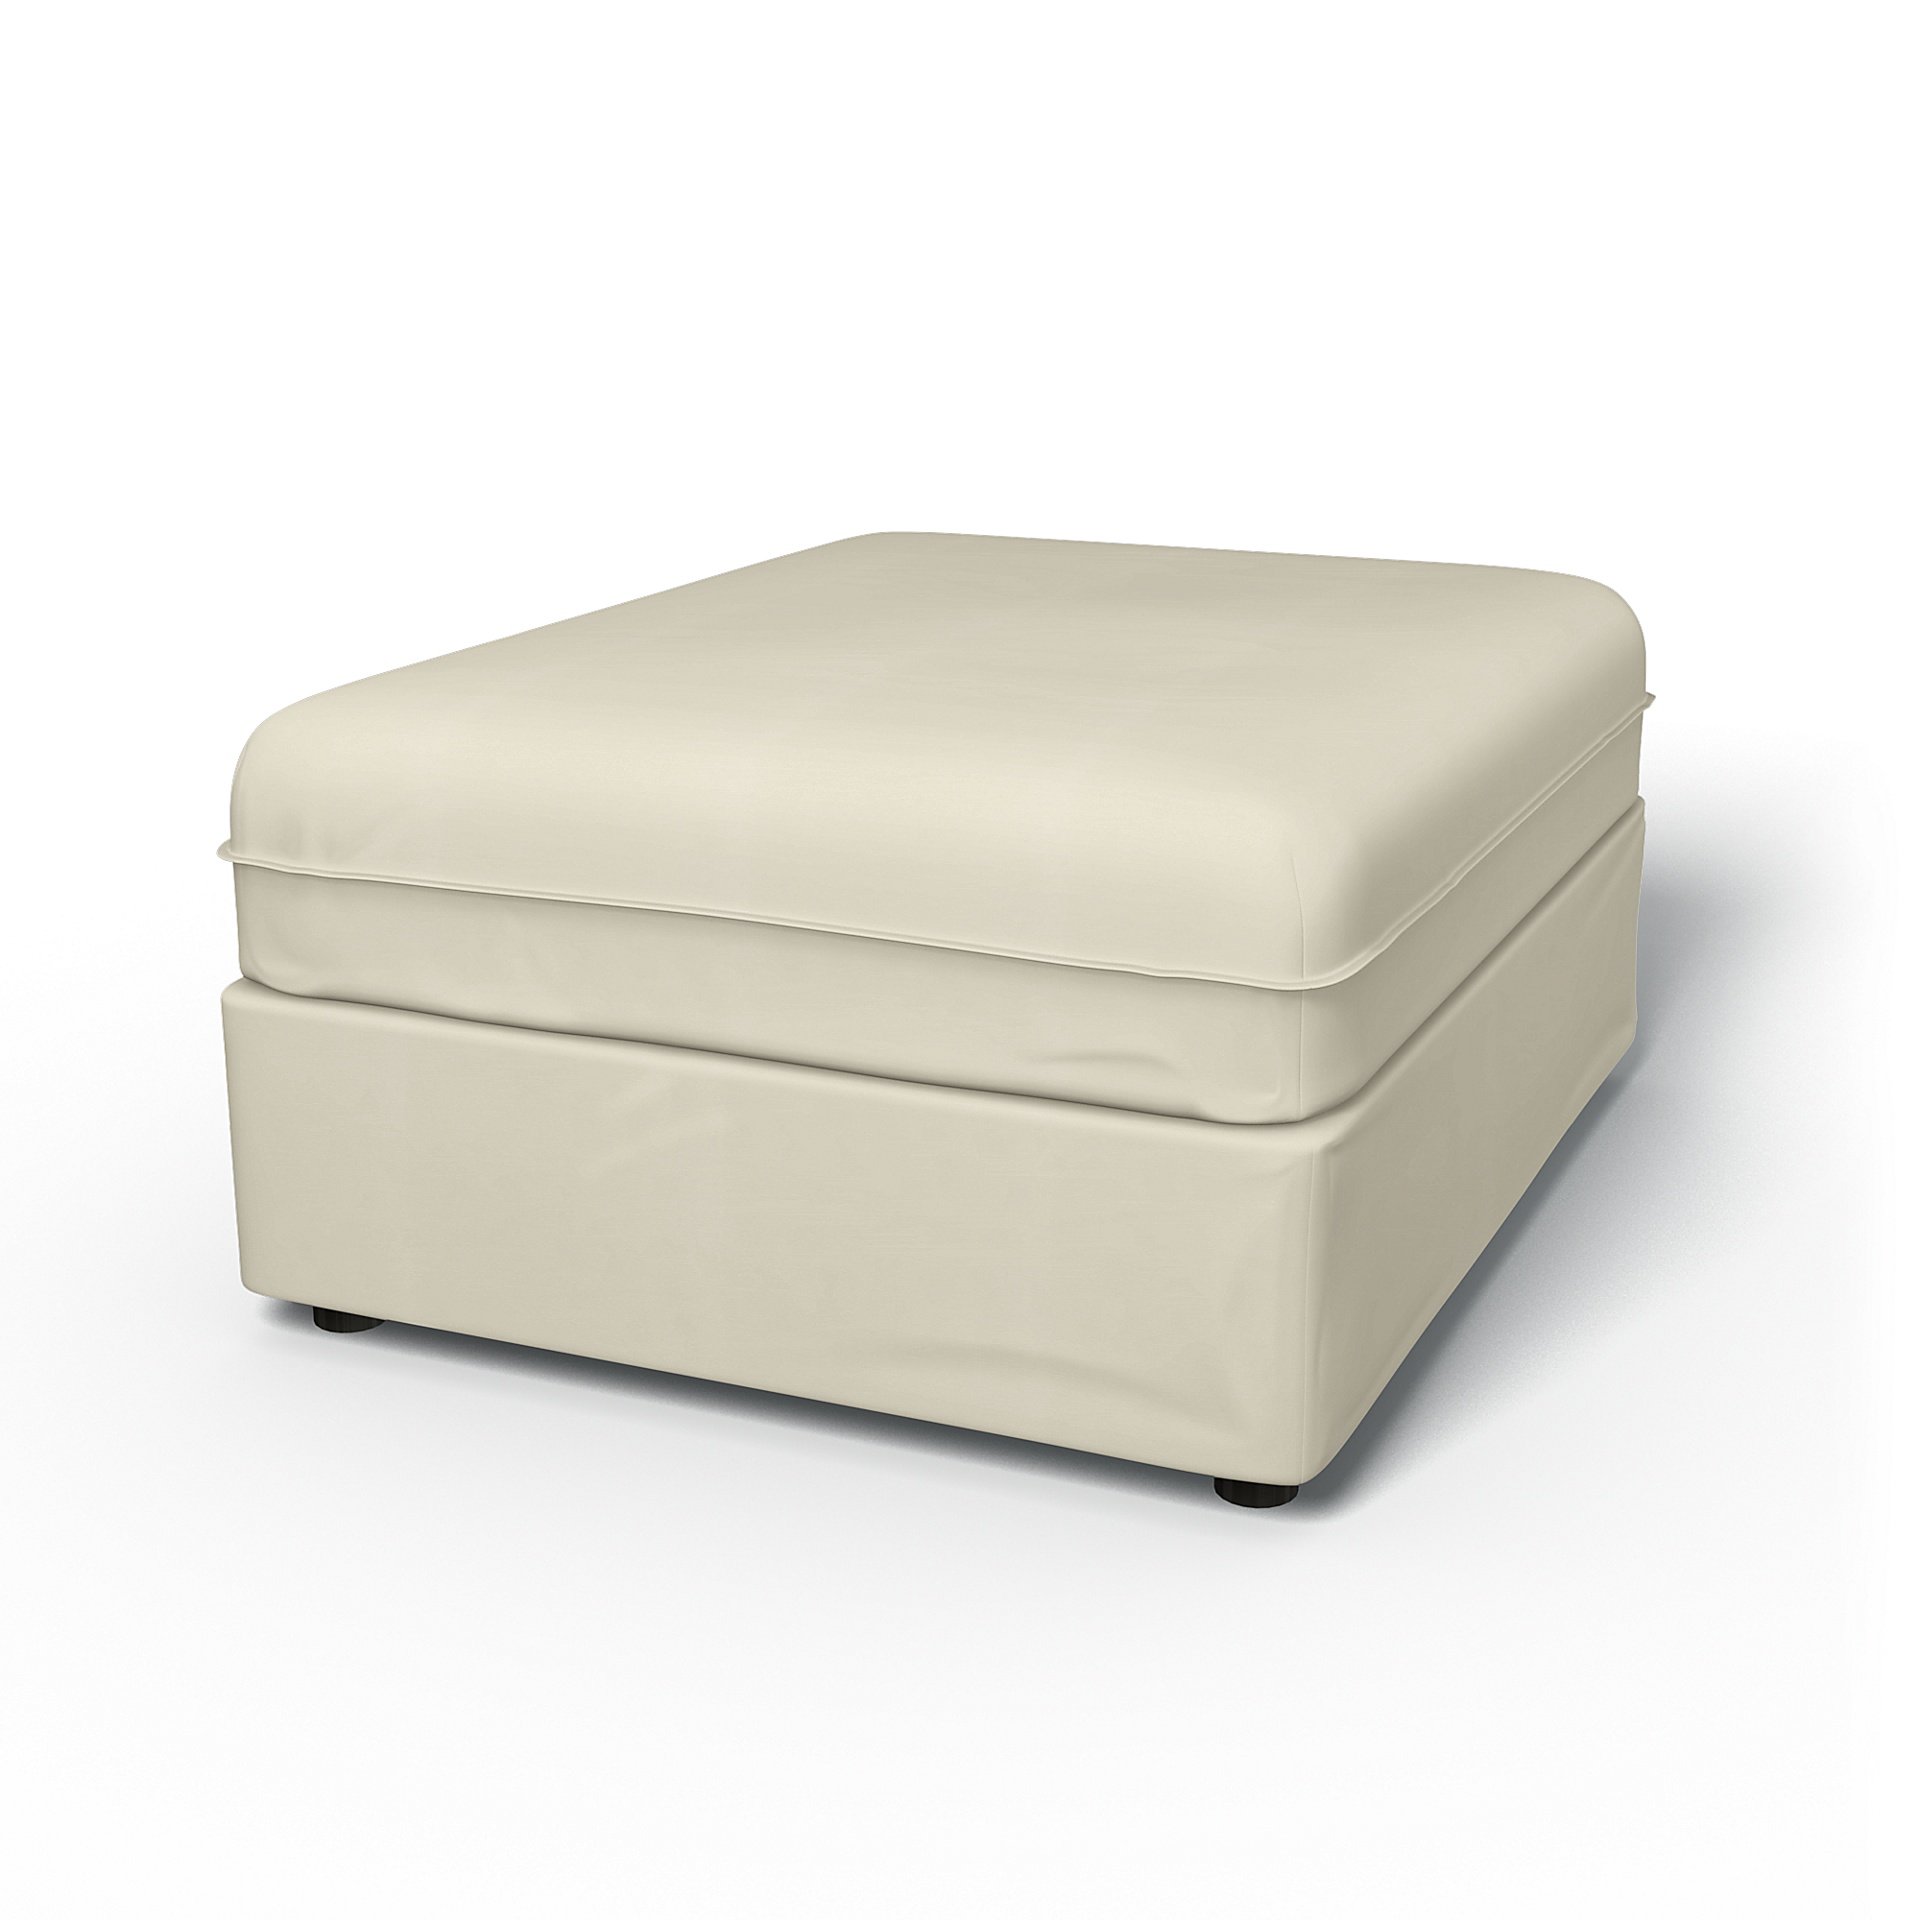 IKEA - Vallentuna Seat Module Cover 80x100cm 32x39in, Tofu, Cotton - Bemz